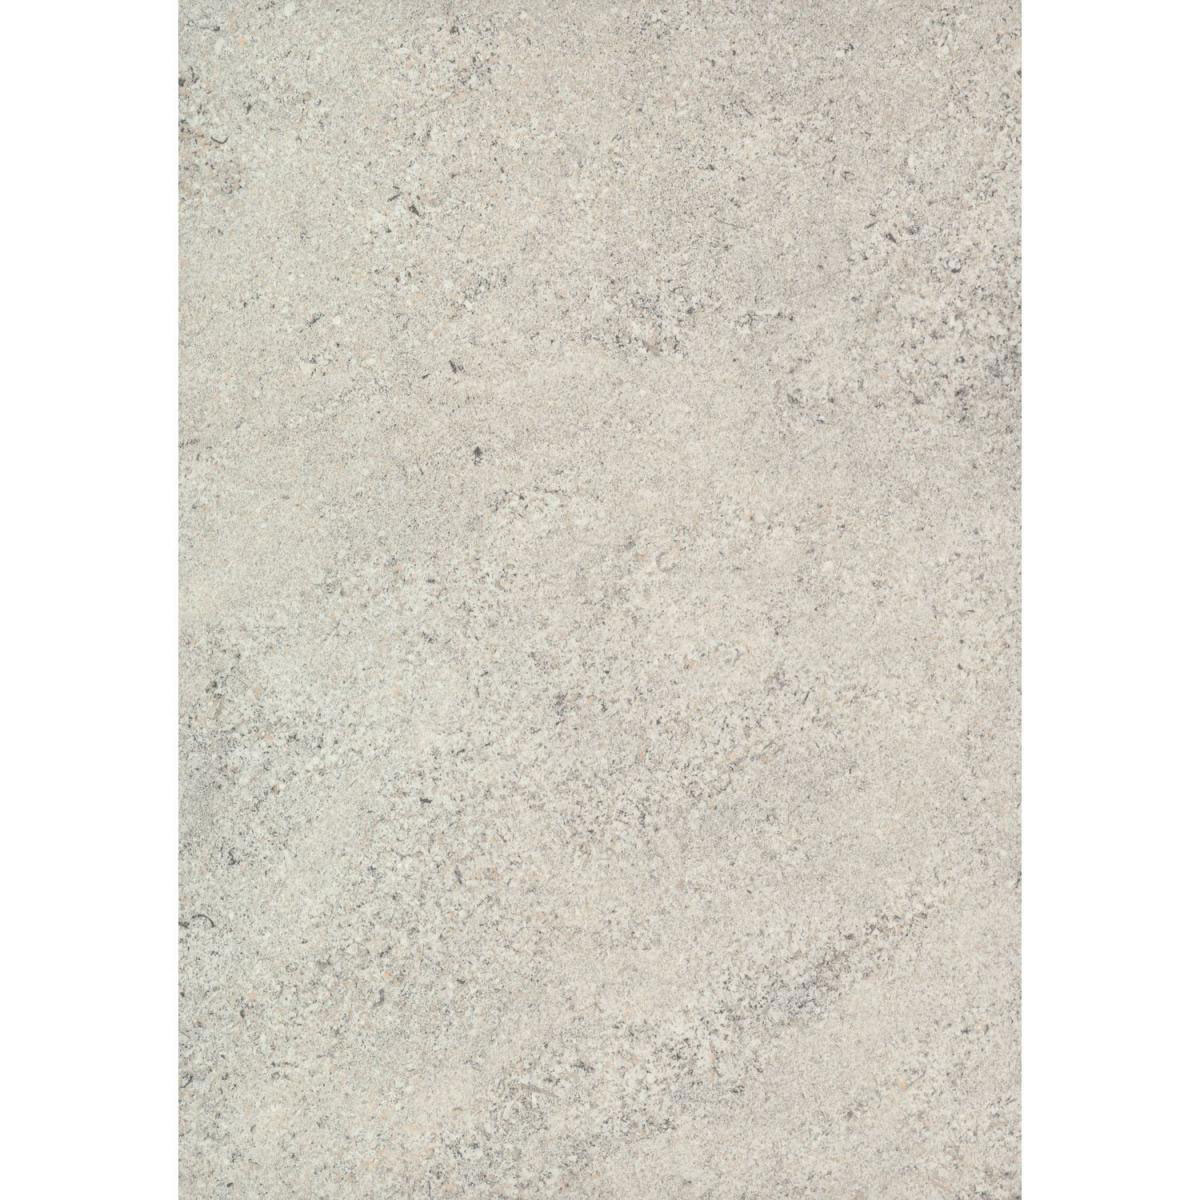 Wandanschlussprofil Plus „baltic kalkstein“, 3000x20x30 mm